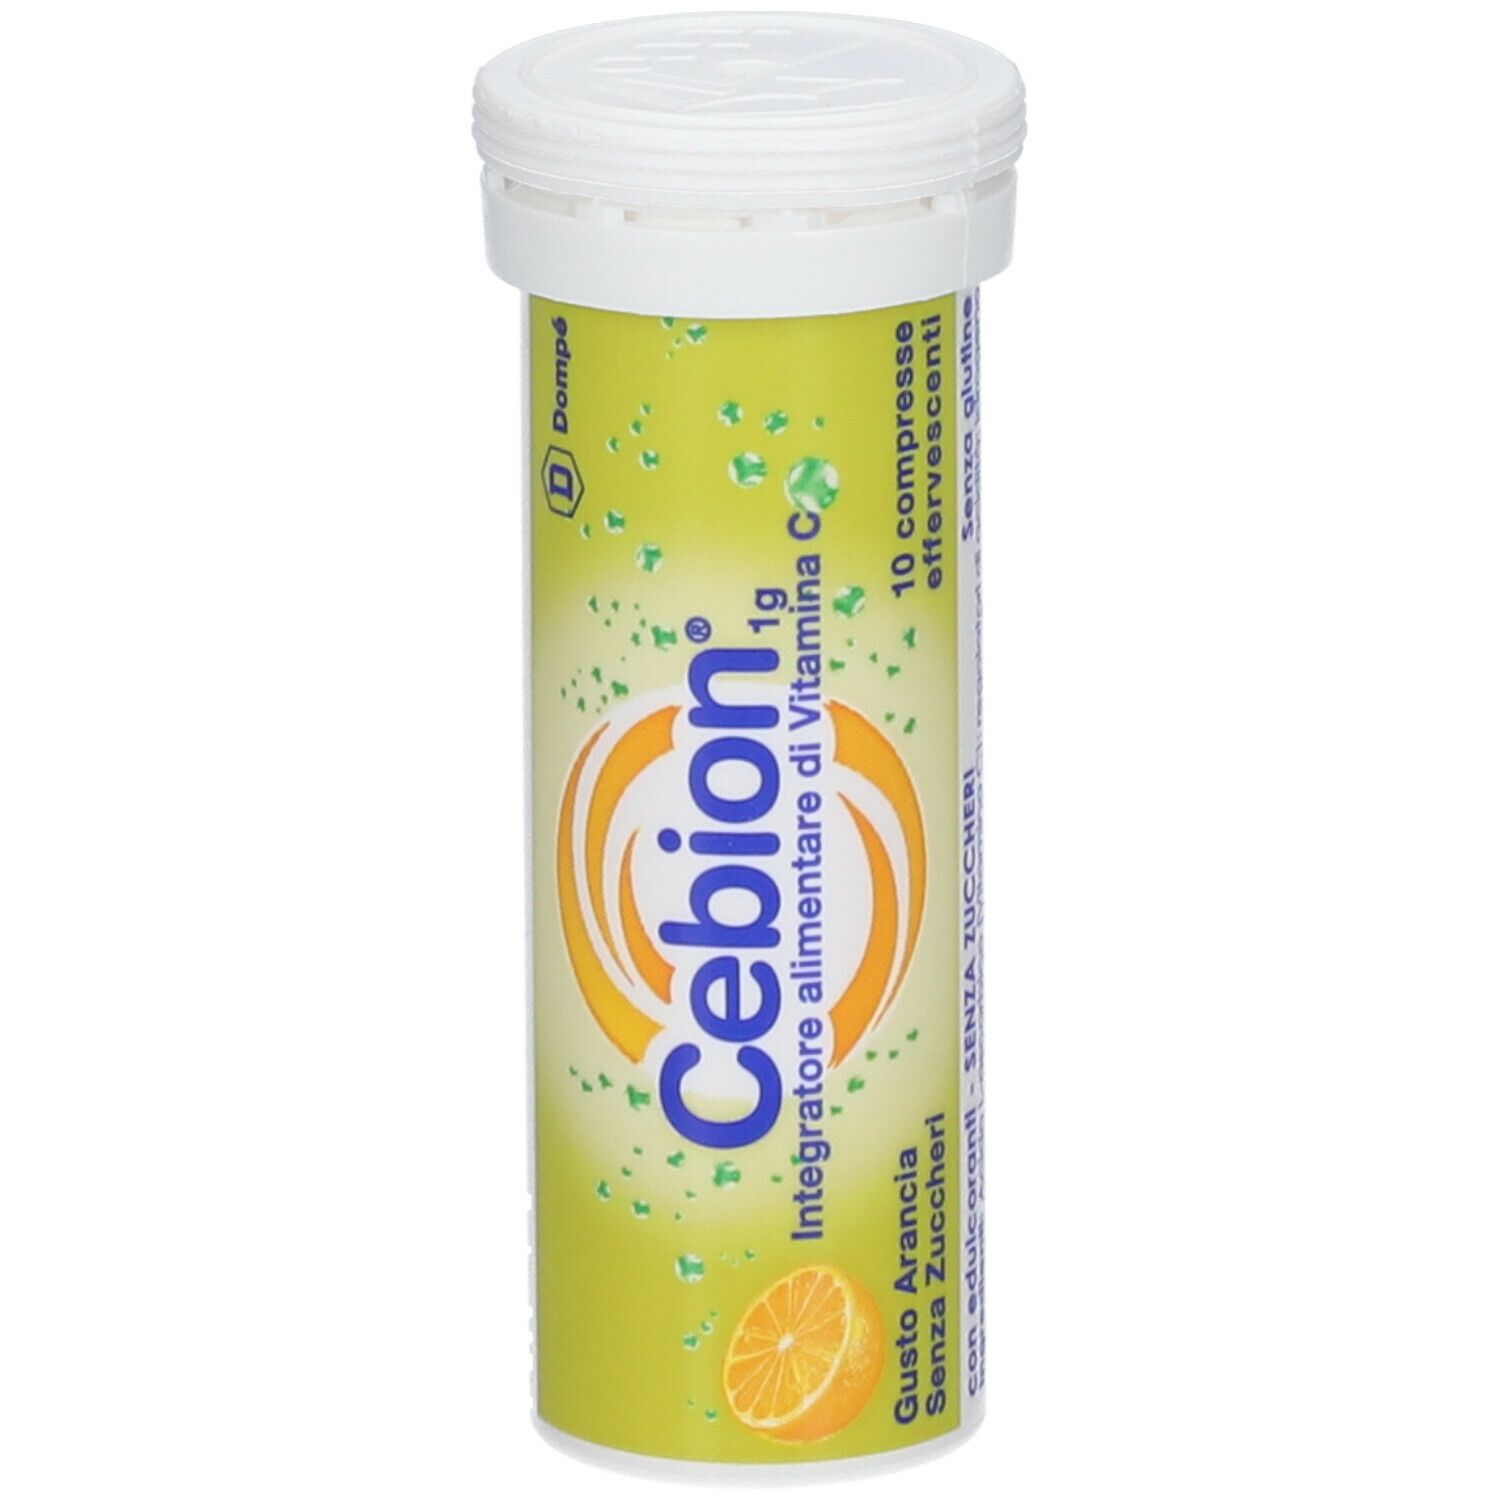 Cebion® Compresse Effervescenti Gusto Arancia Senza Zucchero